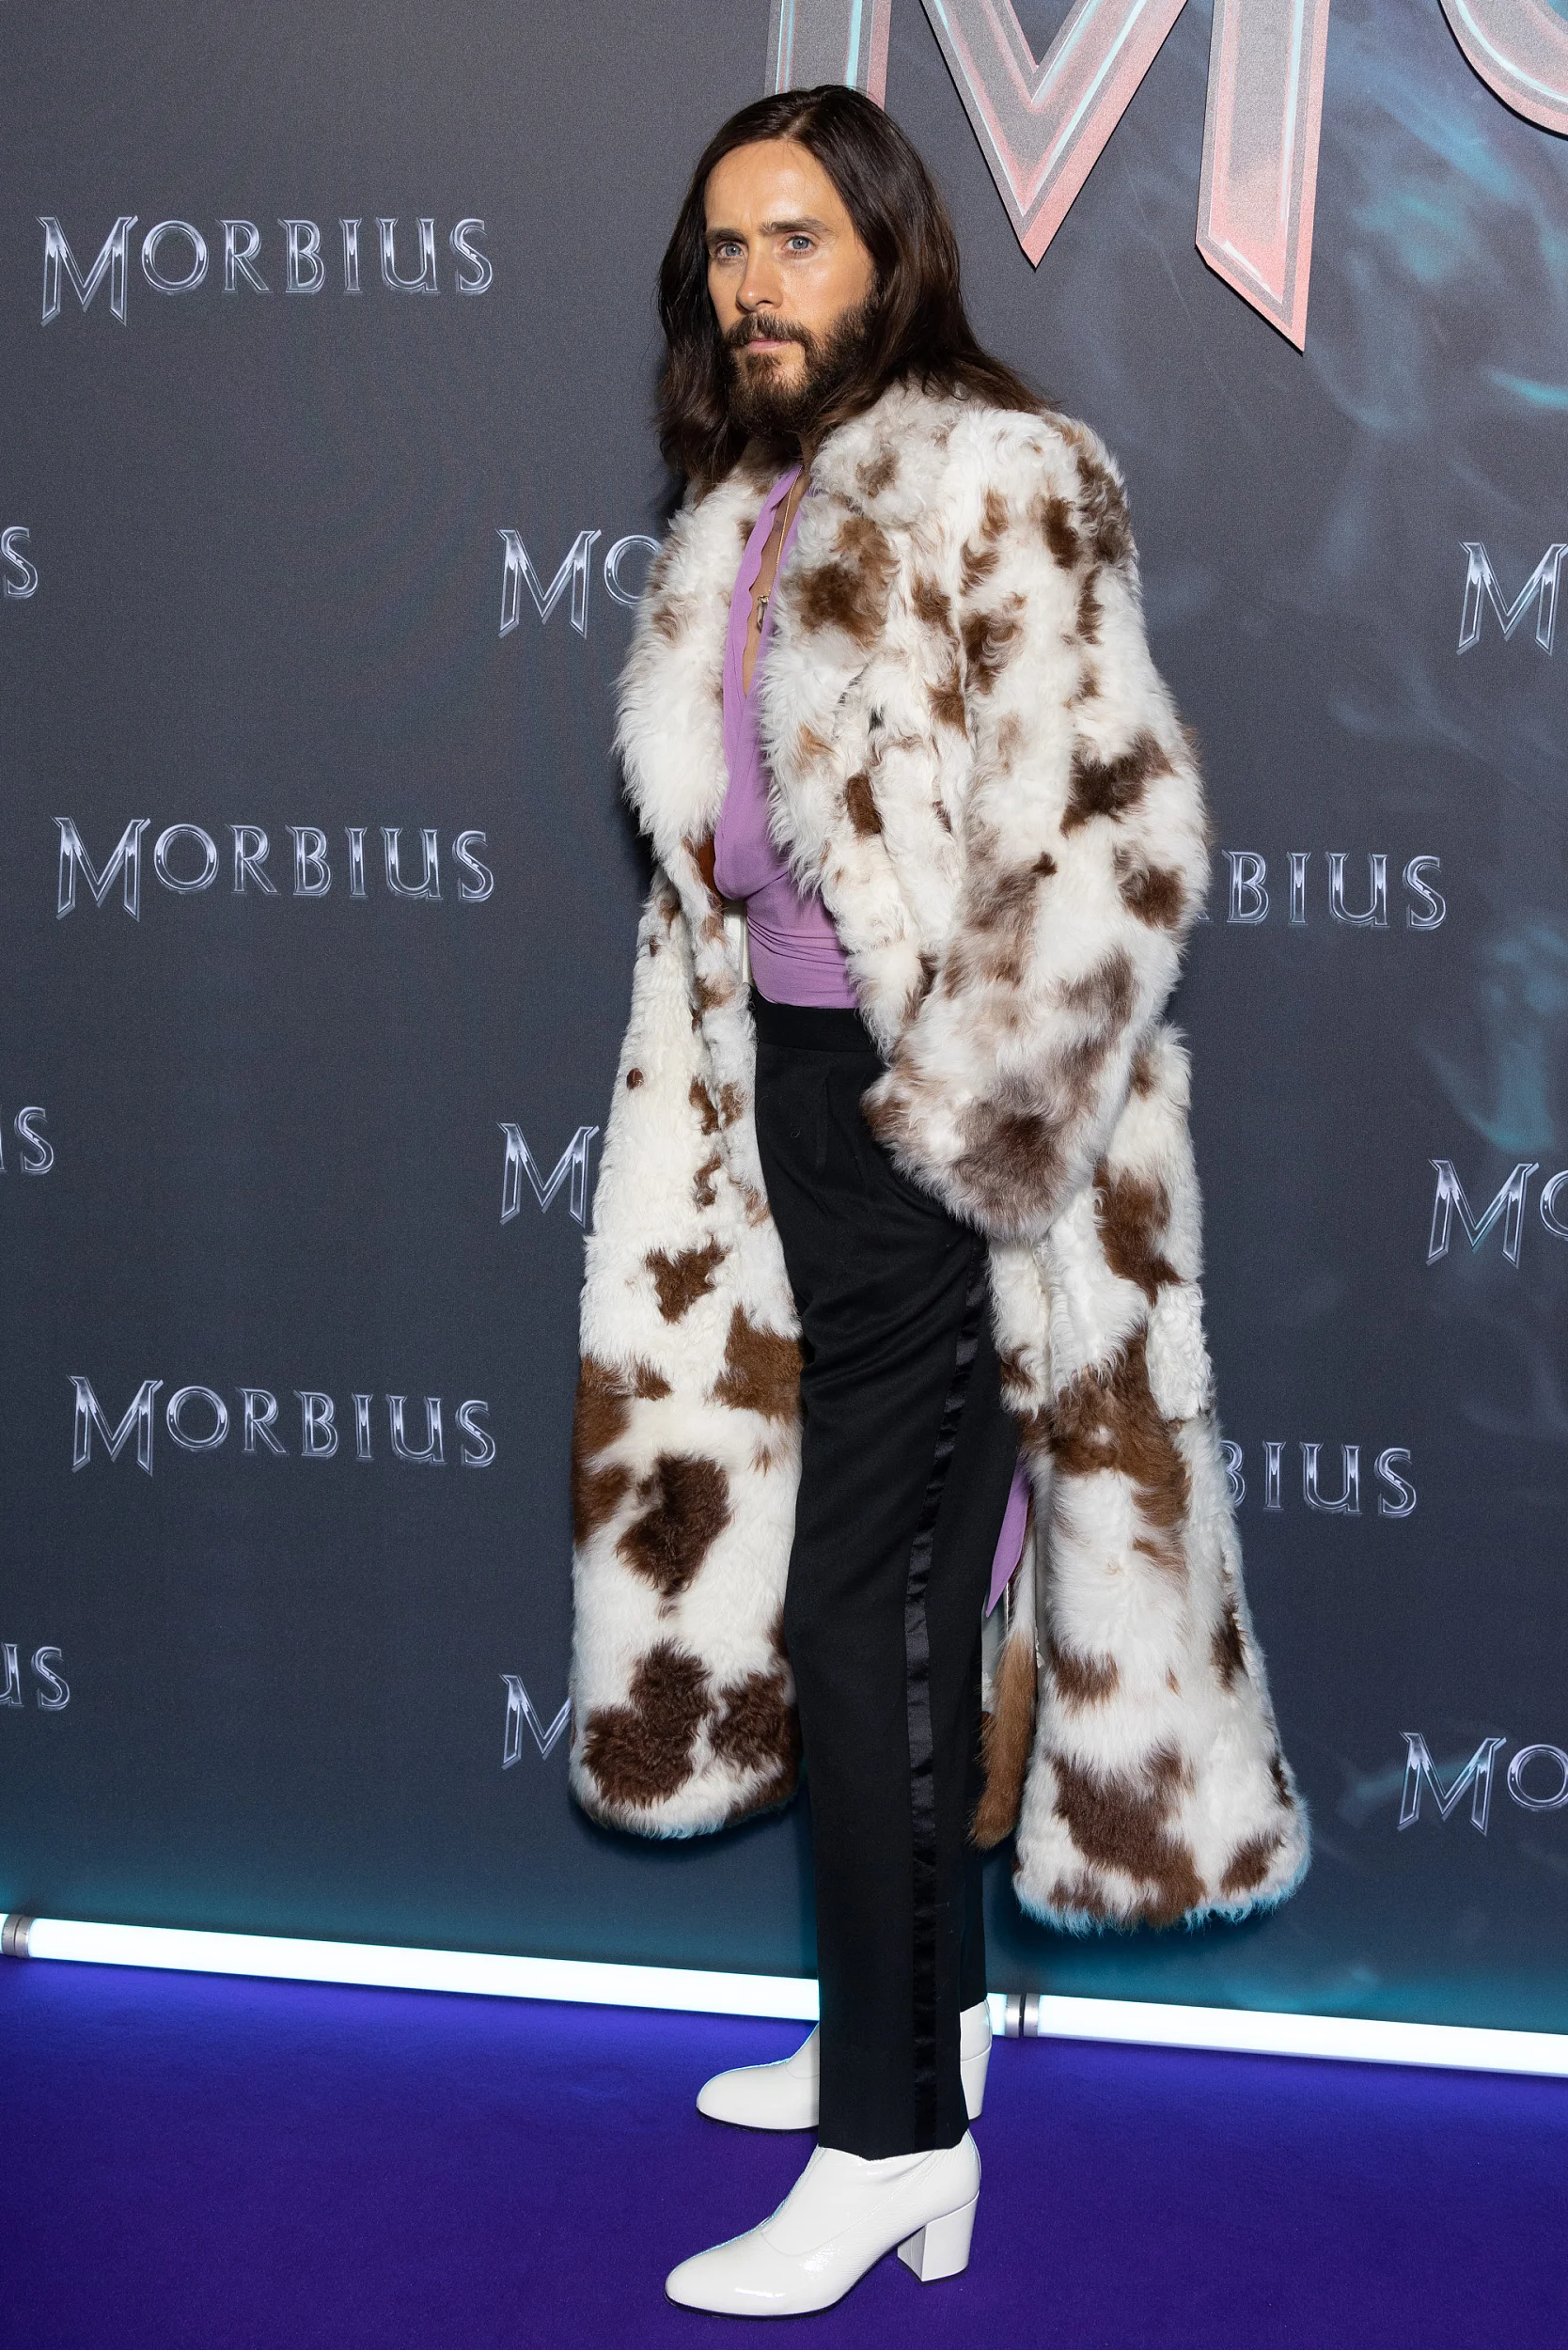 Jared Leto at the Paris premiere of "Morbius"